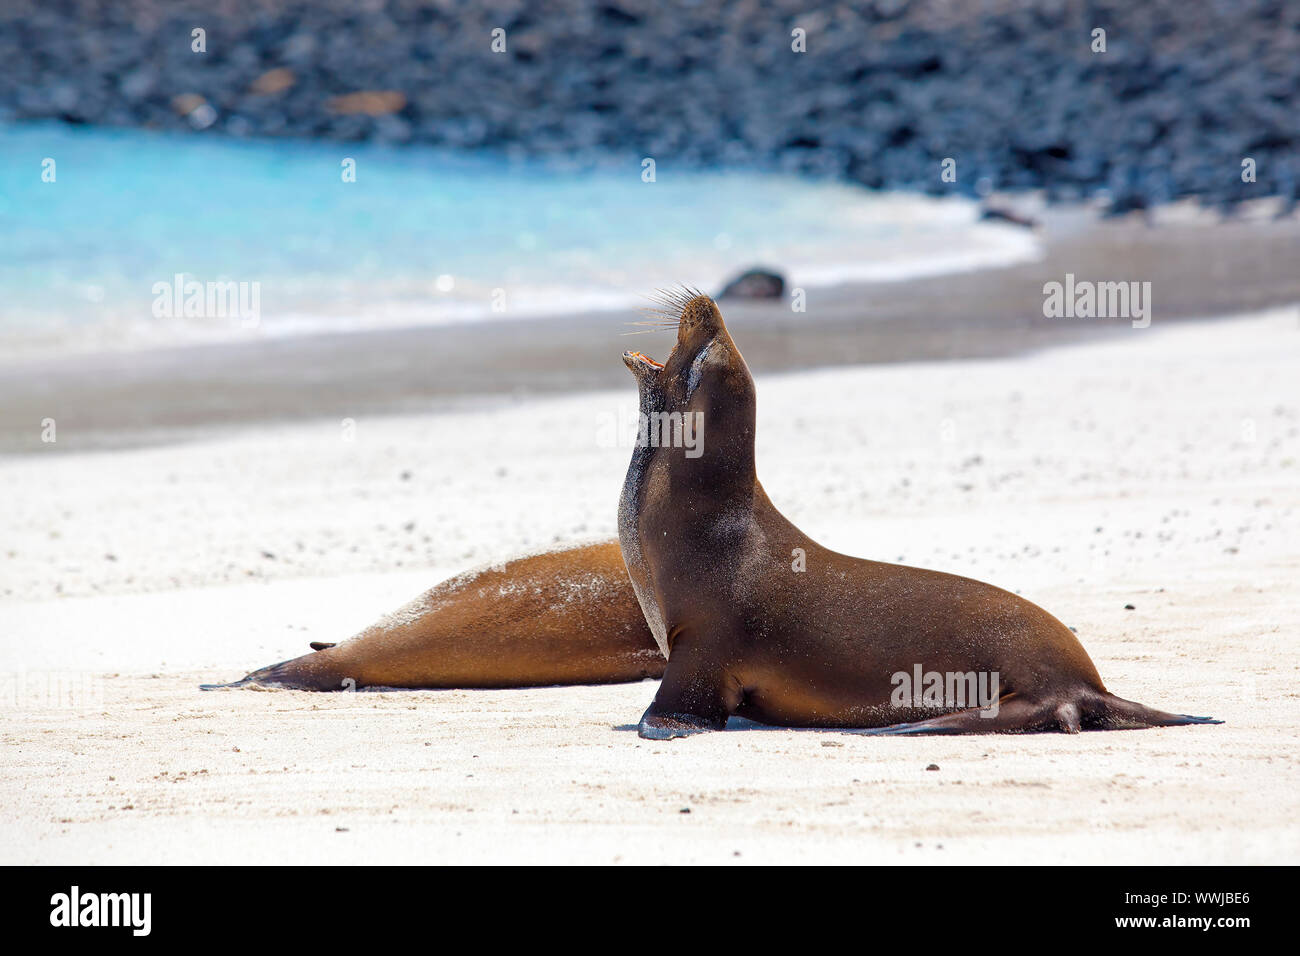 Colonie de lions de mer sur l'île de Santa Fe, Galapagos Banque D'Images